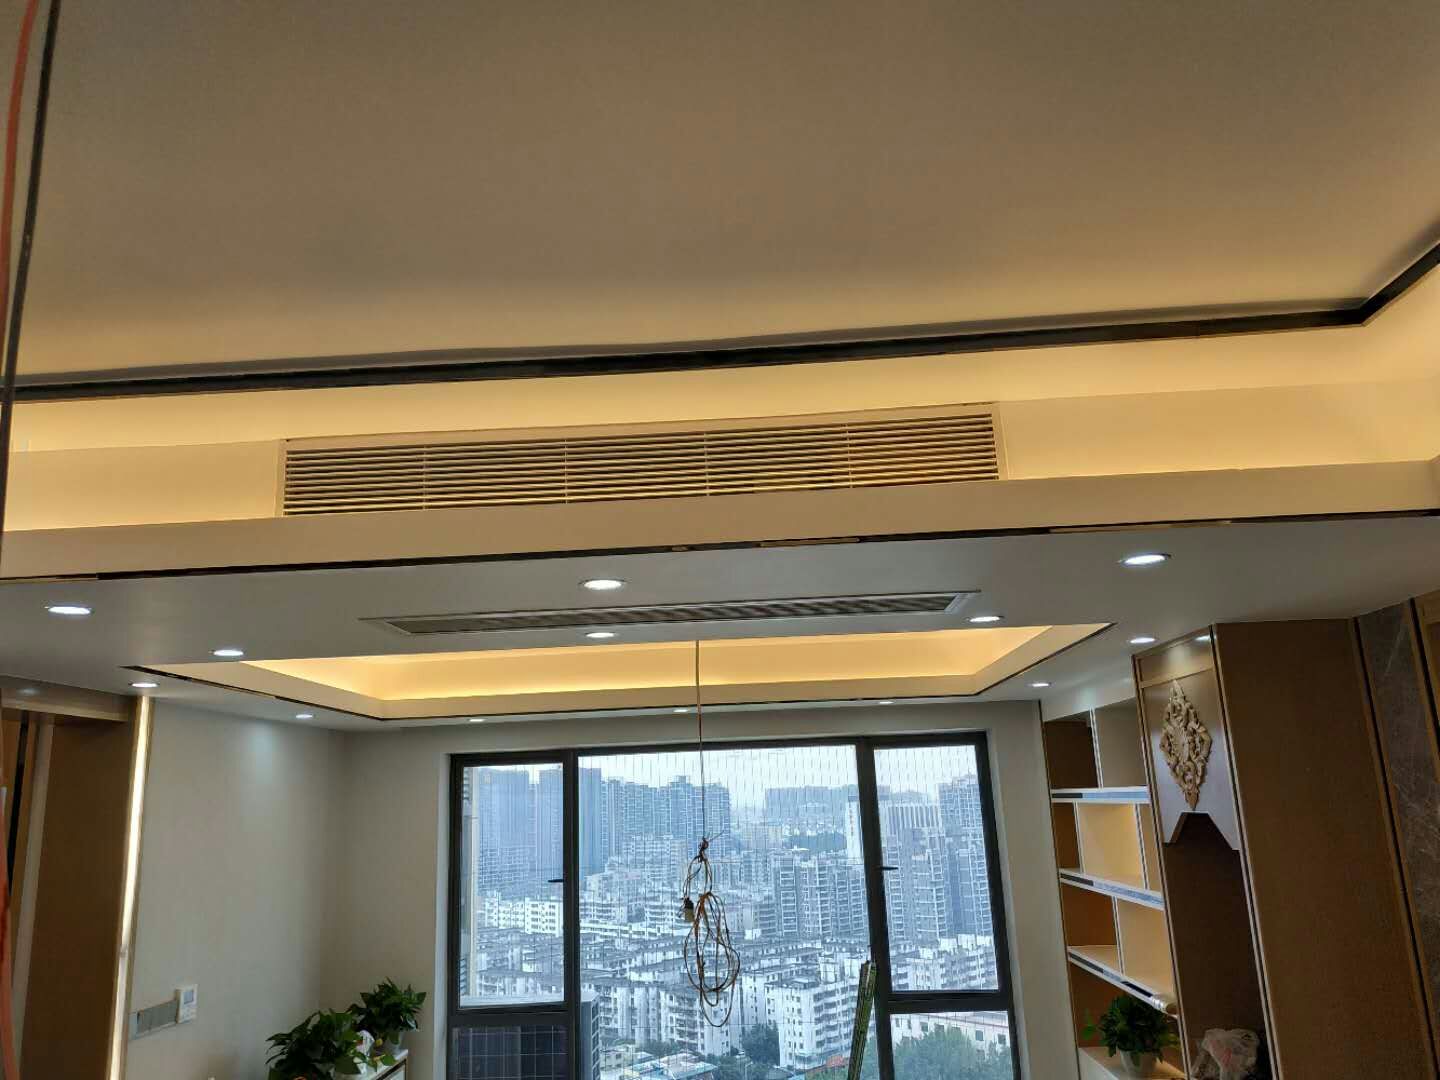 深圳坂田5层独栋别墅大金中央空调——
优秀安装工艺，体验量身定制的高档